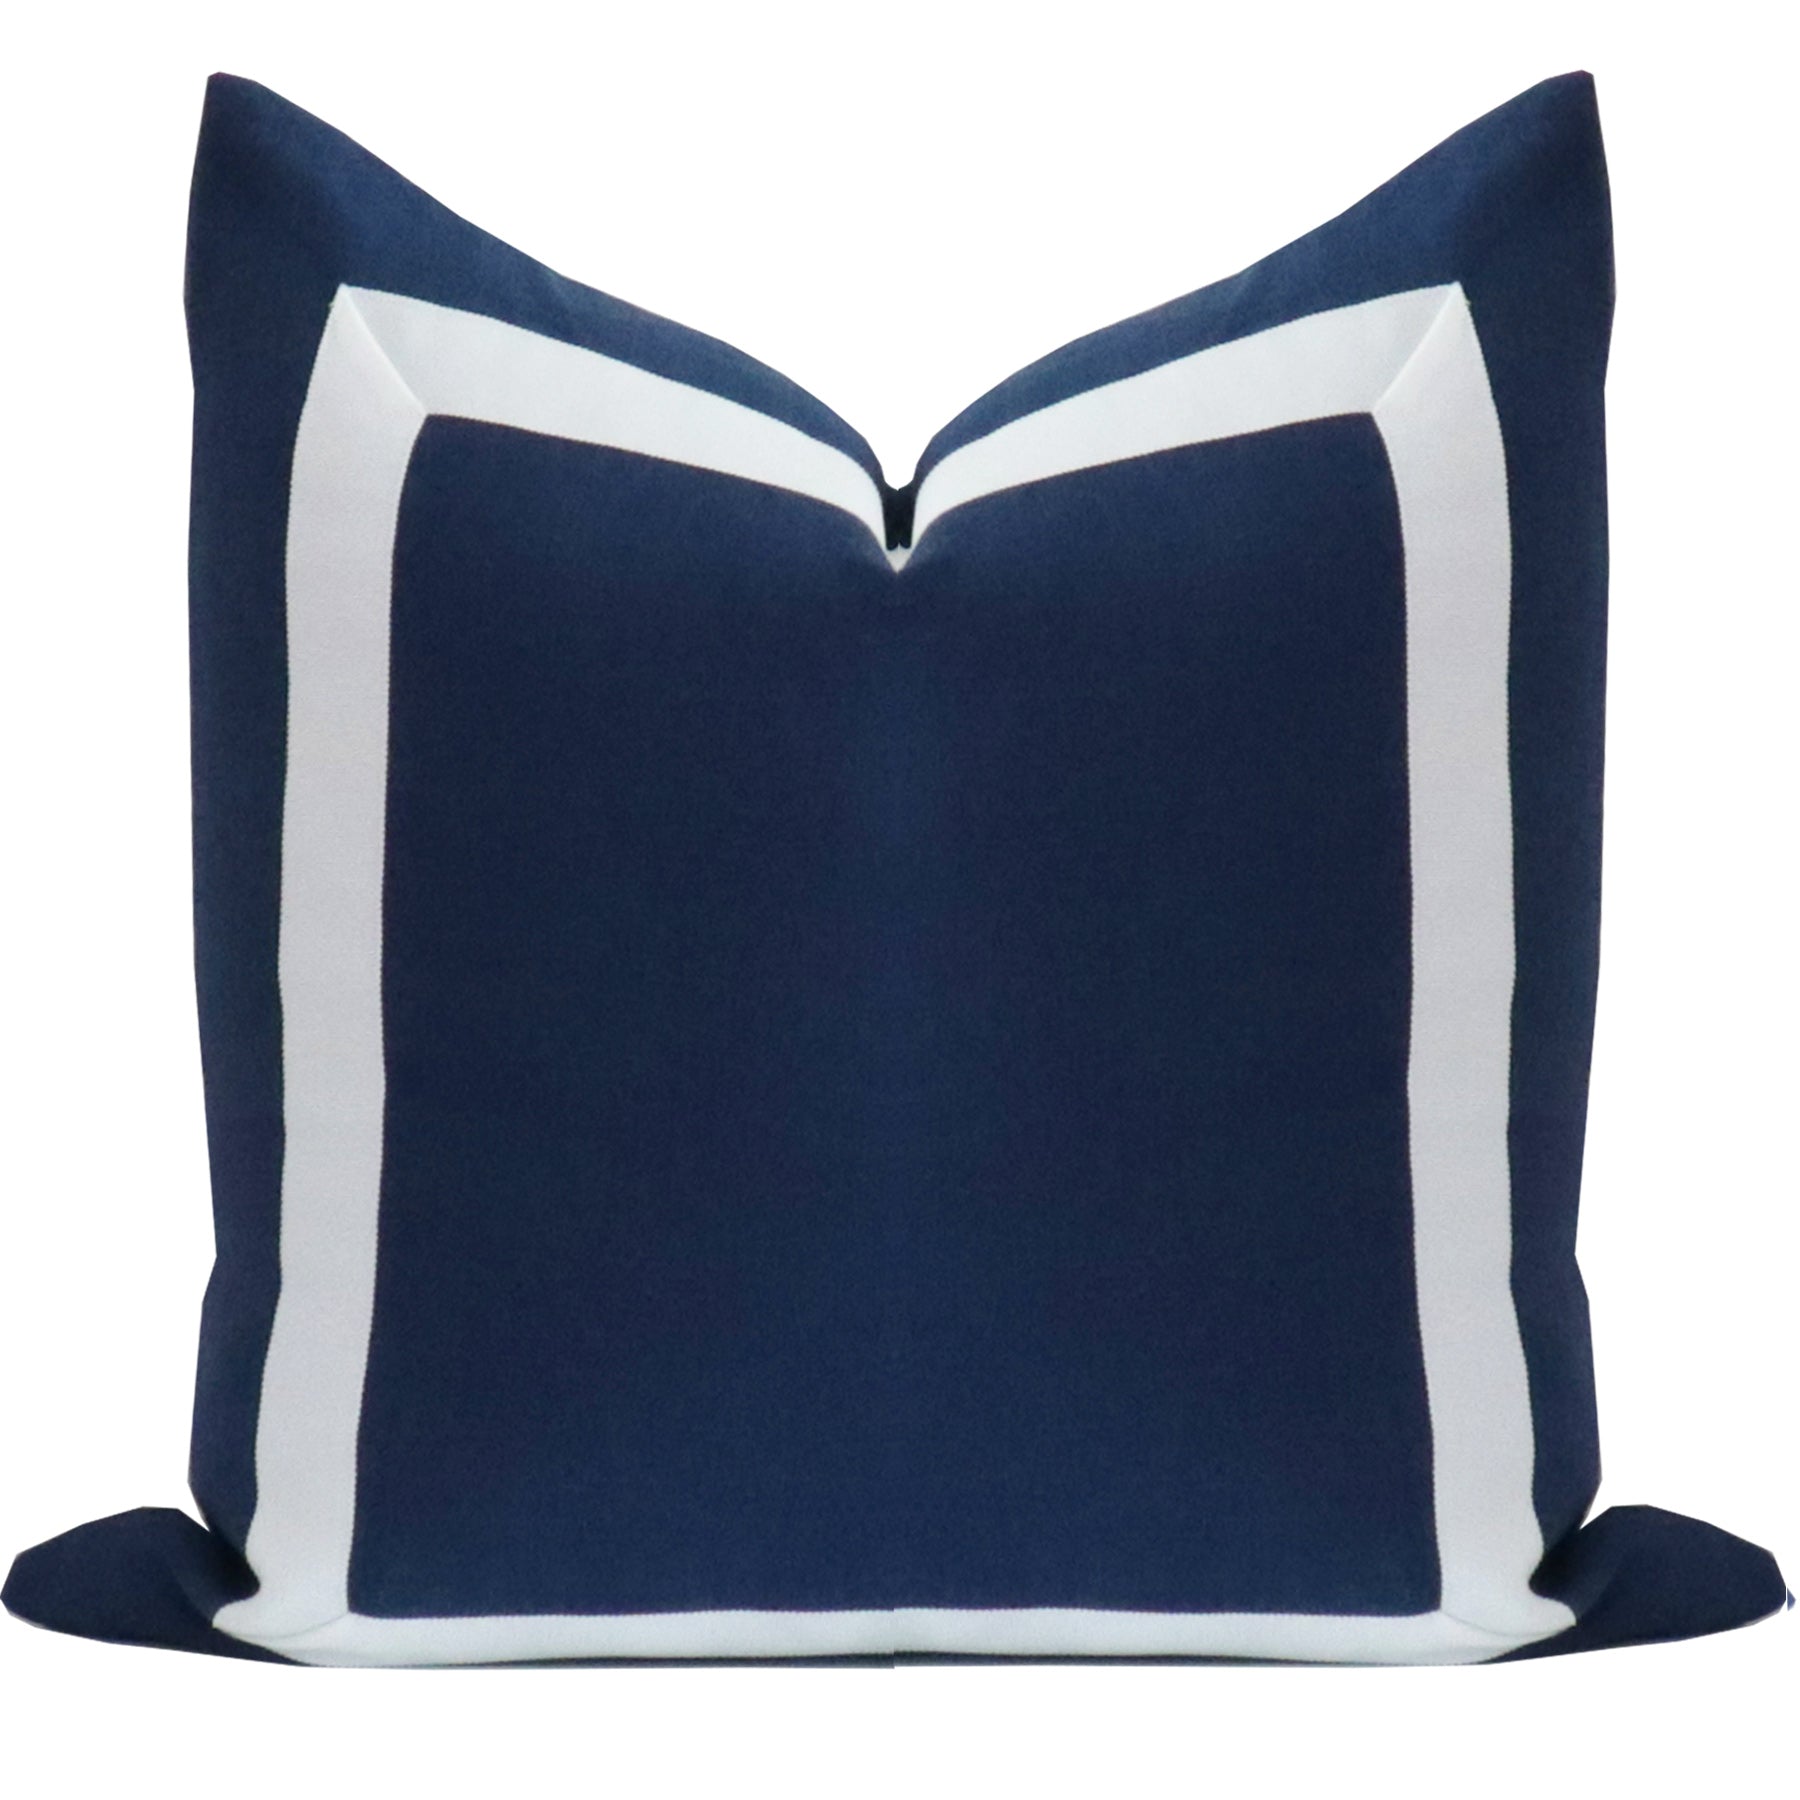 Long Lumbar Pillow, Blue Lumbar Pillow, Lumbar Throw Pillow Cover, BLUE  Linen Lumbar Pillow, Fringe Style Pillow, COVER ONLY 